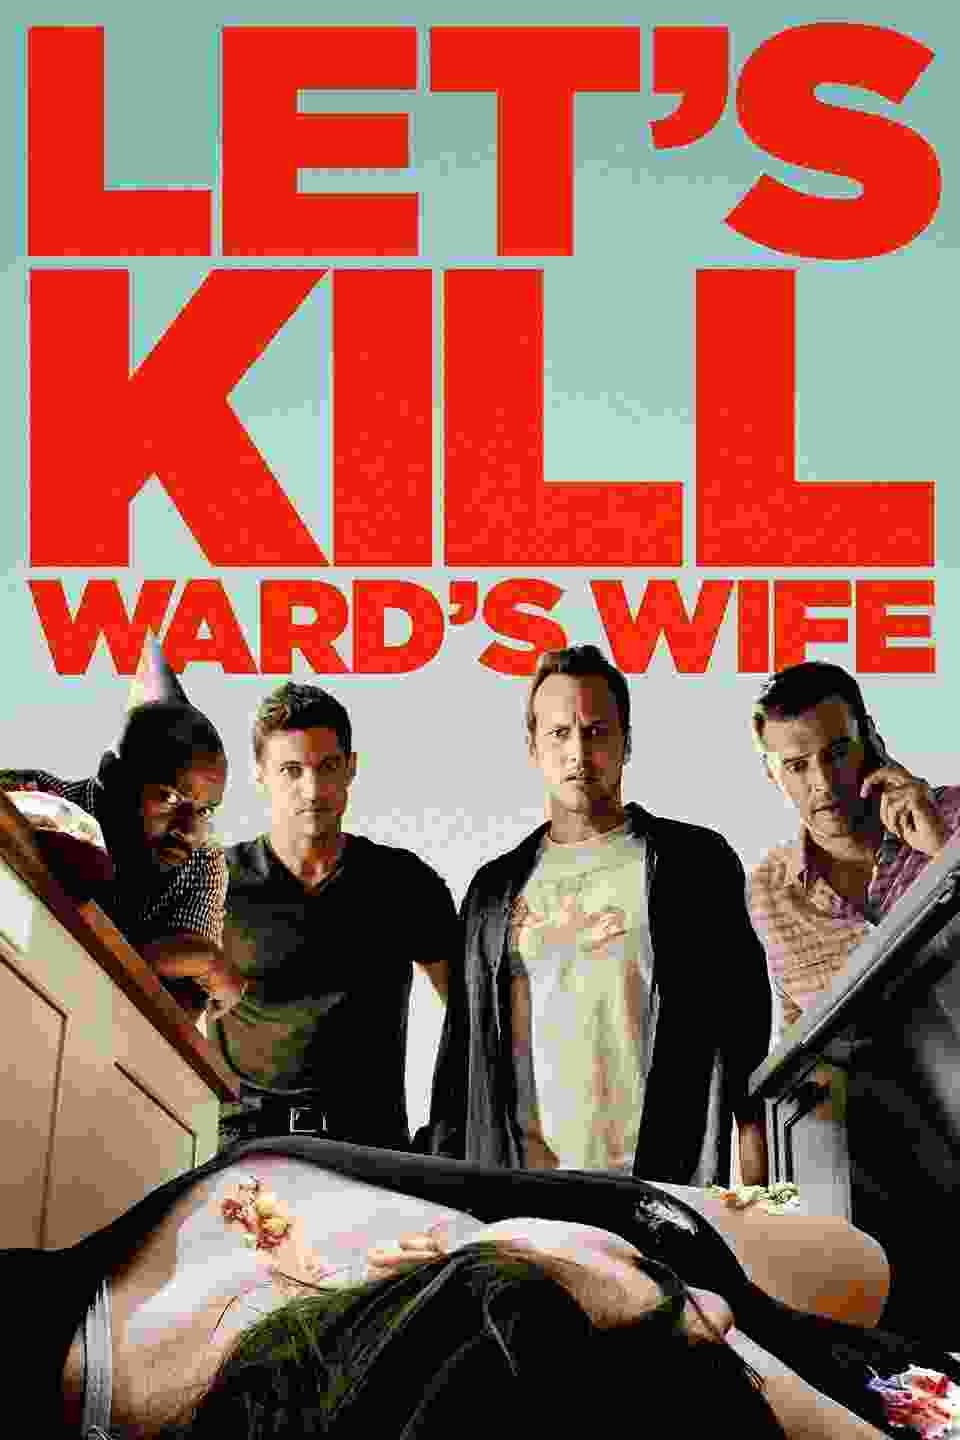 Let's Kill Ward's Wife (2014) vj Junior Amy Acker